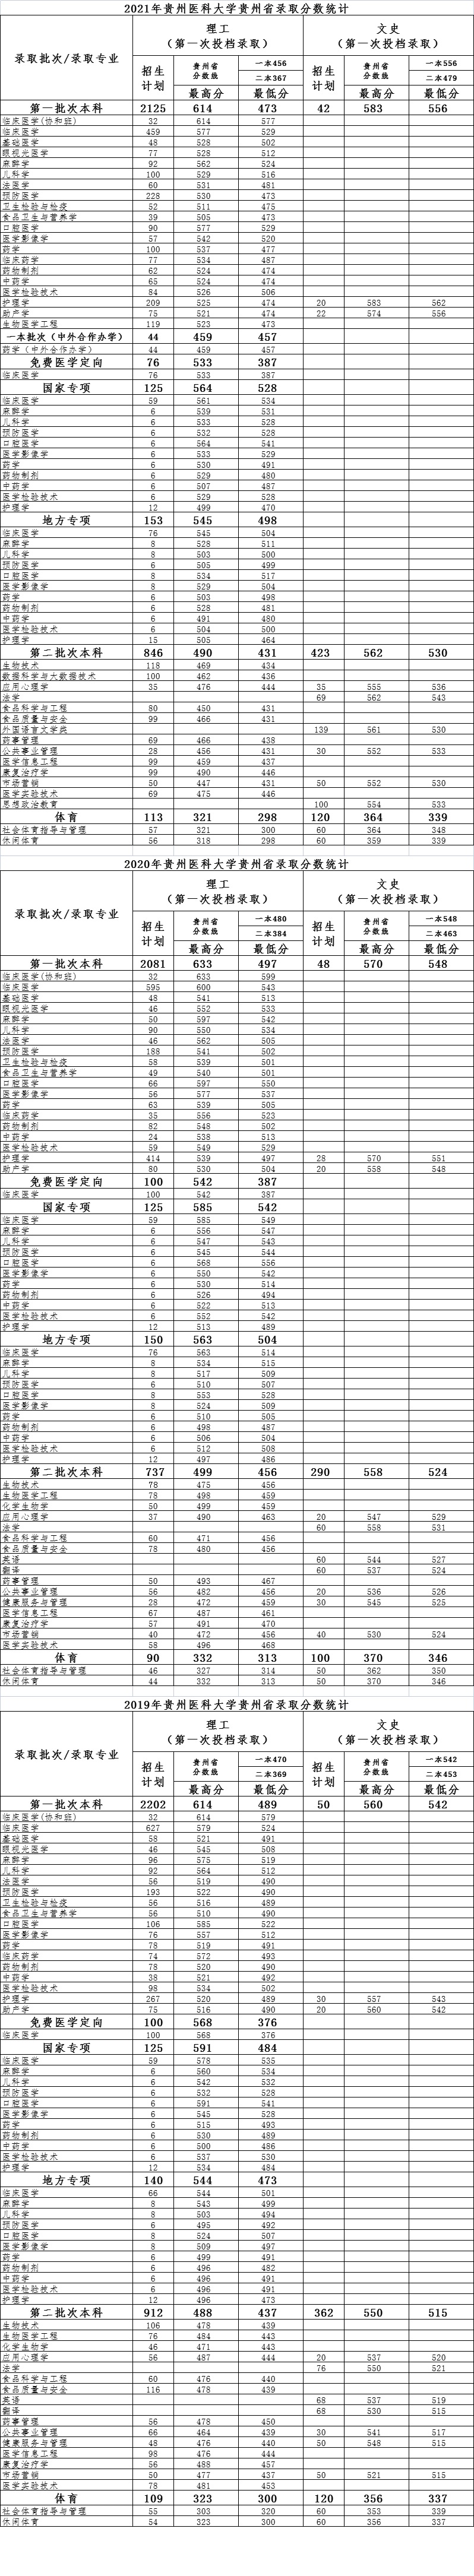 2019年-2021年<a href='/zhuanlan/guizhoubk/02/'>贵州医科大学</a>贵州省录取分数统计